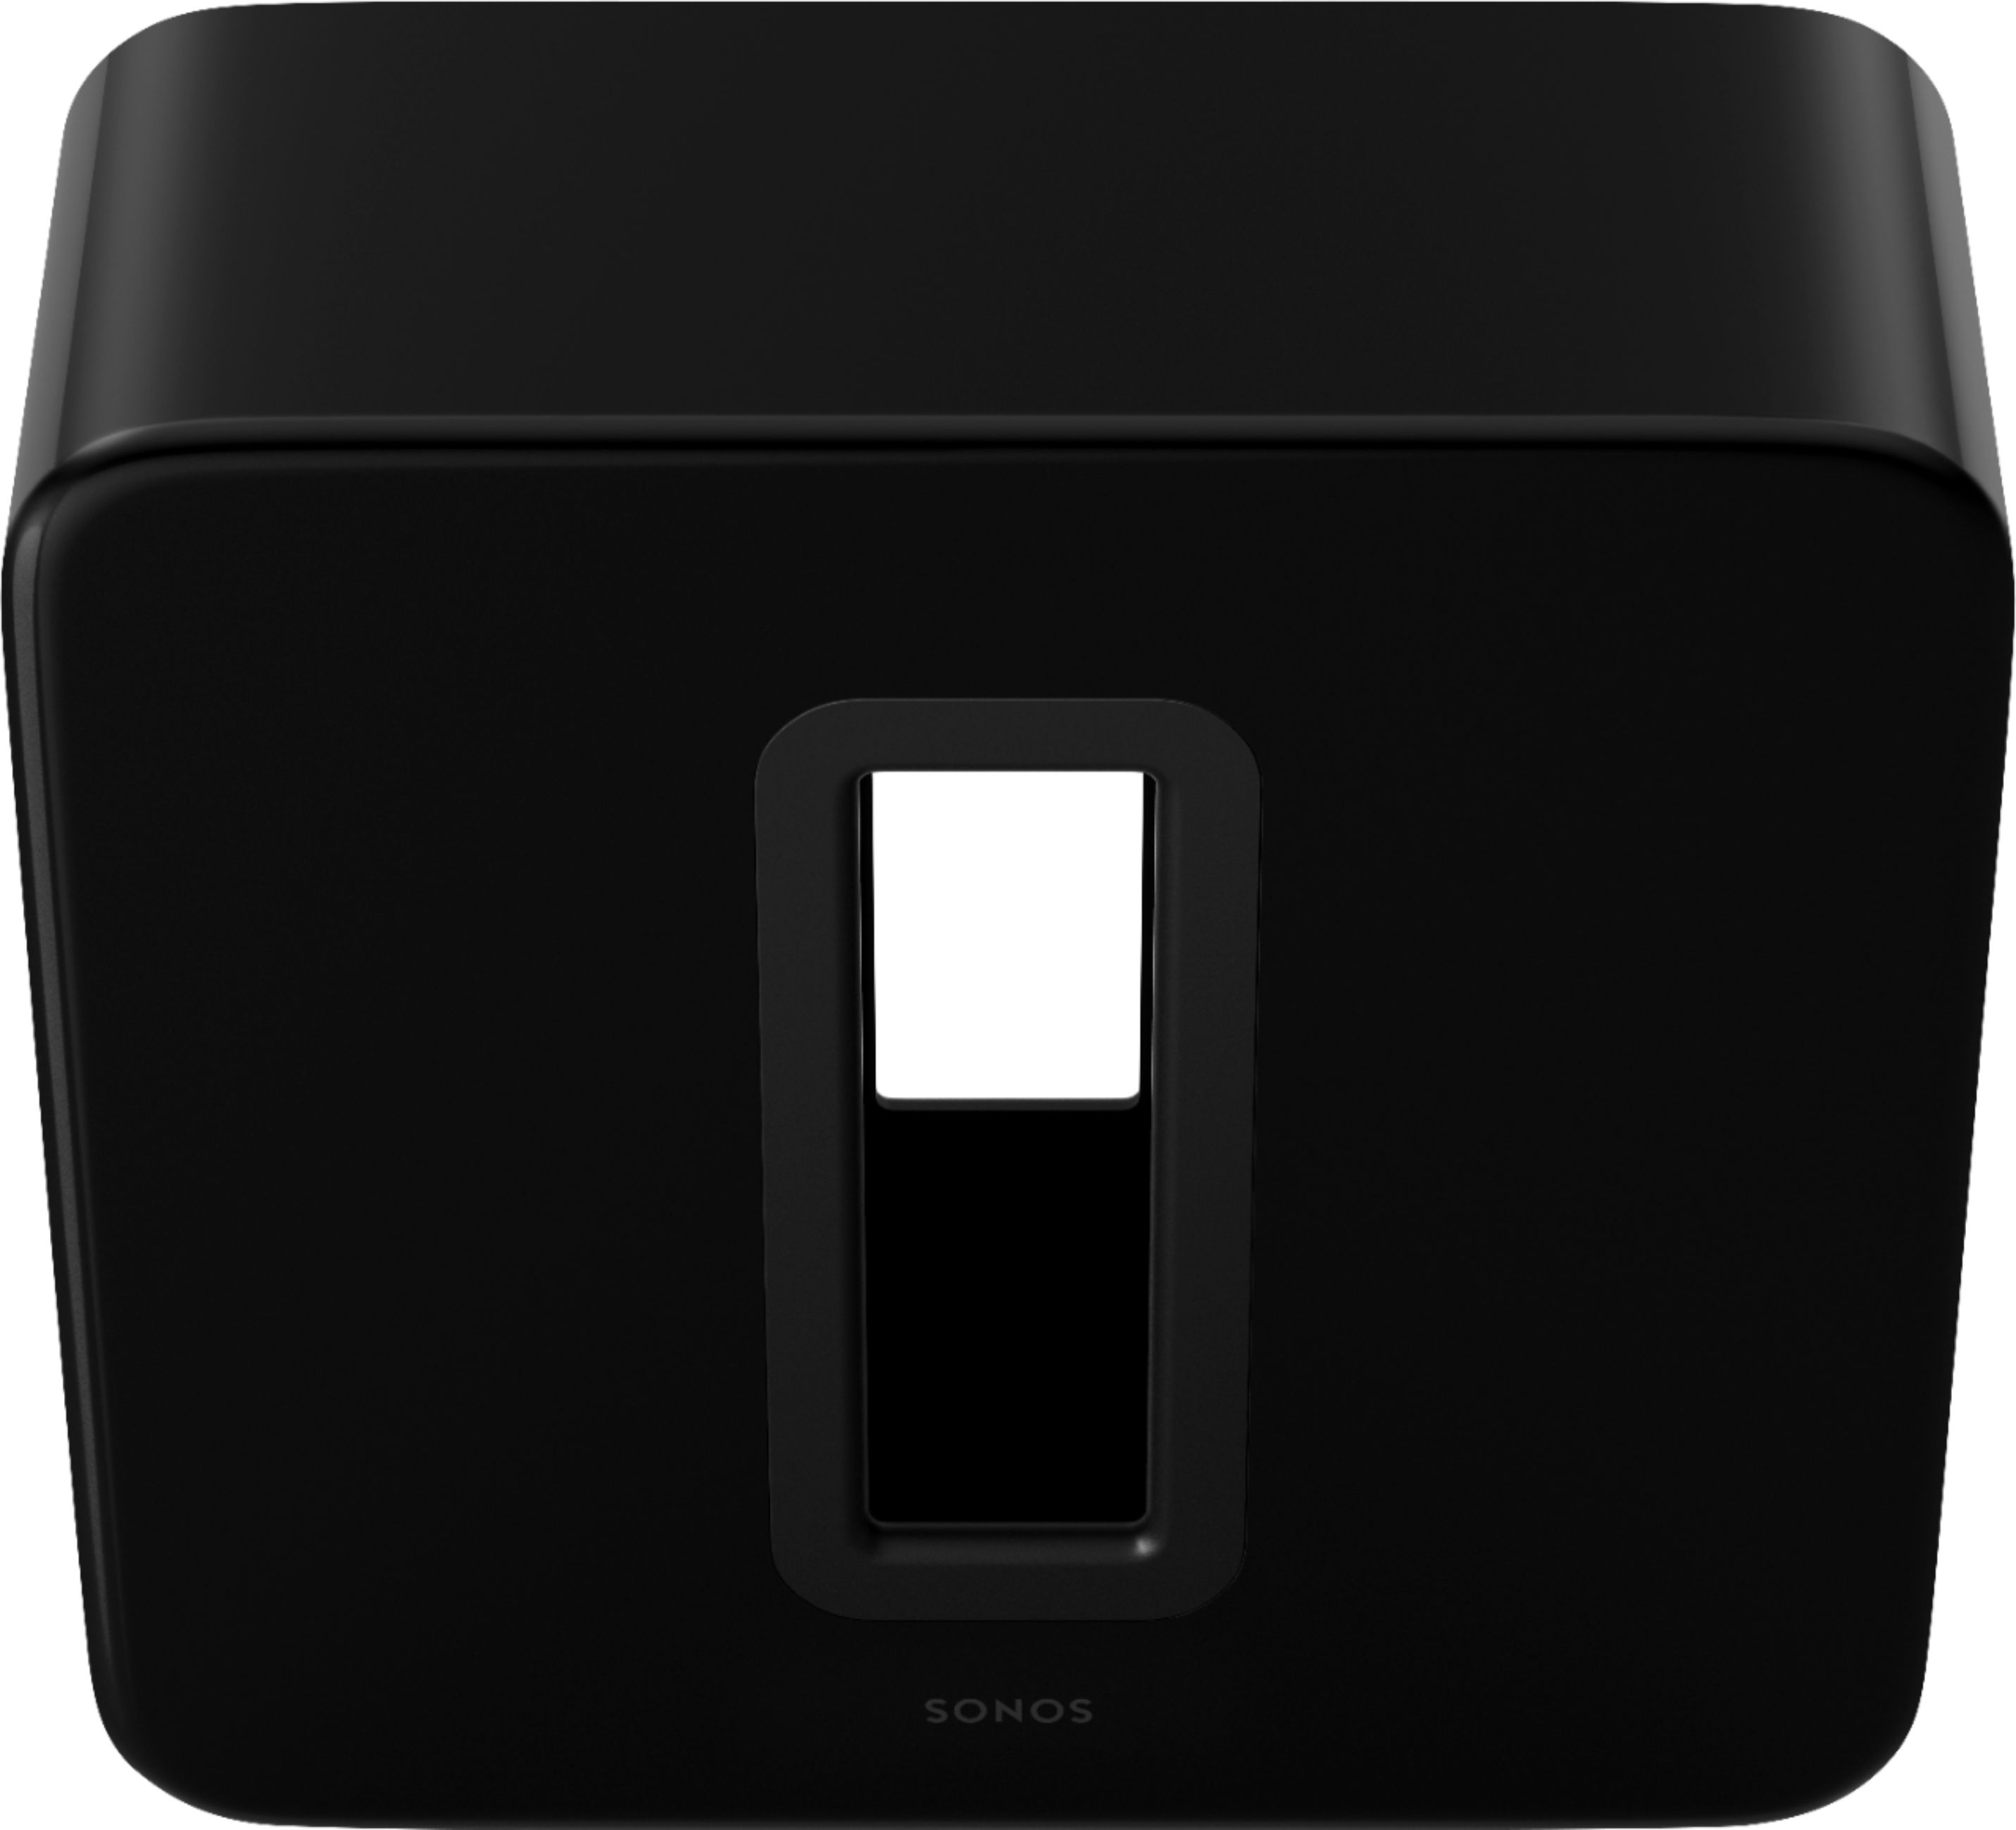 Sonos Sub (Gen 3) Wireless Subwoofer Black SONOS SUB US (BLACK) - Best